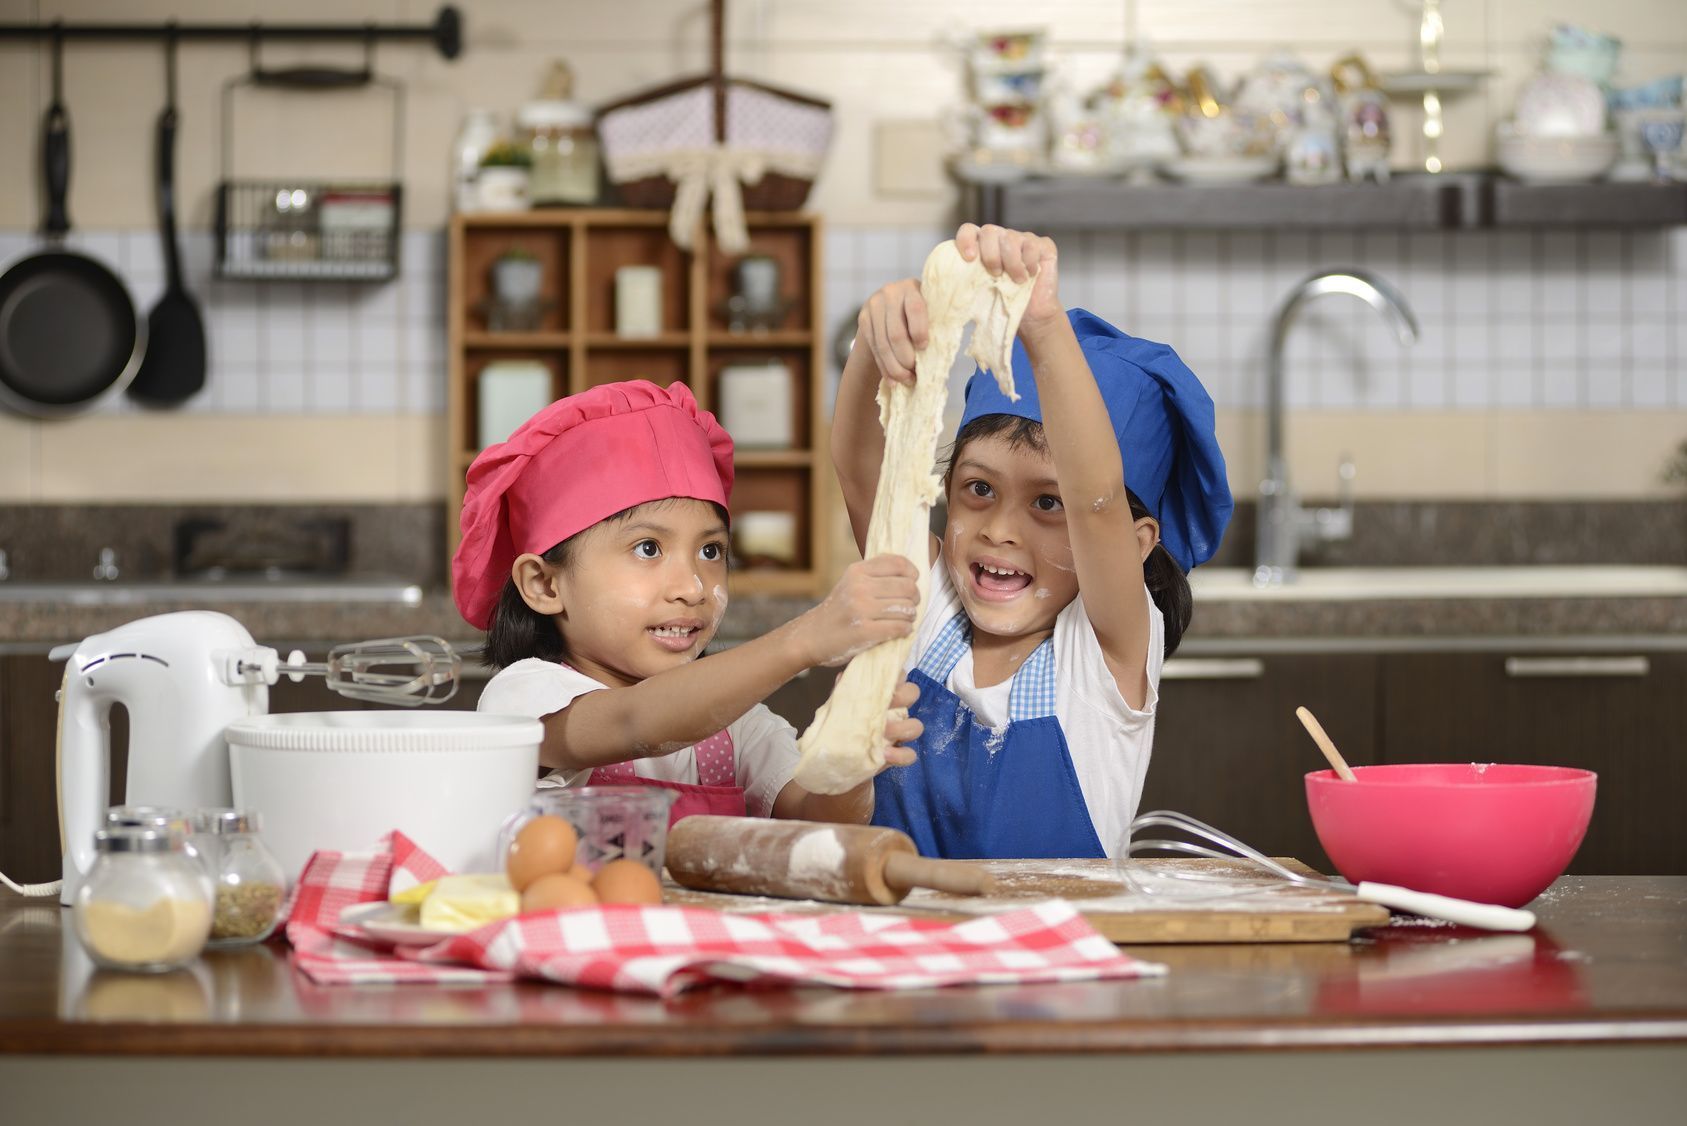 Pizza schmeckt nicht nur gut, sie lässt sich auch wunderbar vorbereiten – und wenn's um leckeres Essen geht, helfen die Kleinen gern mit.